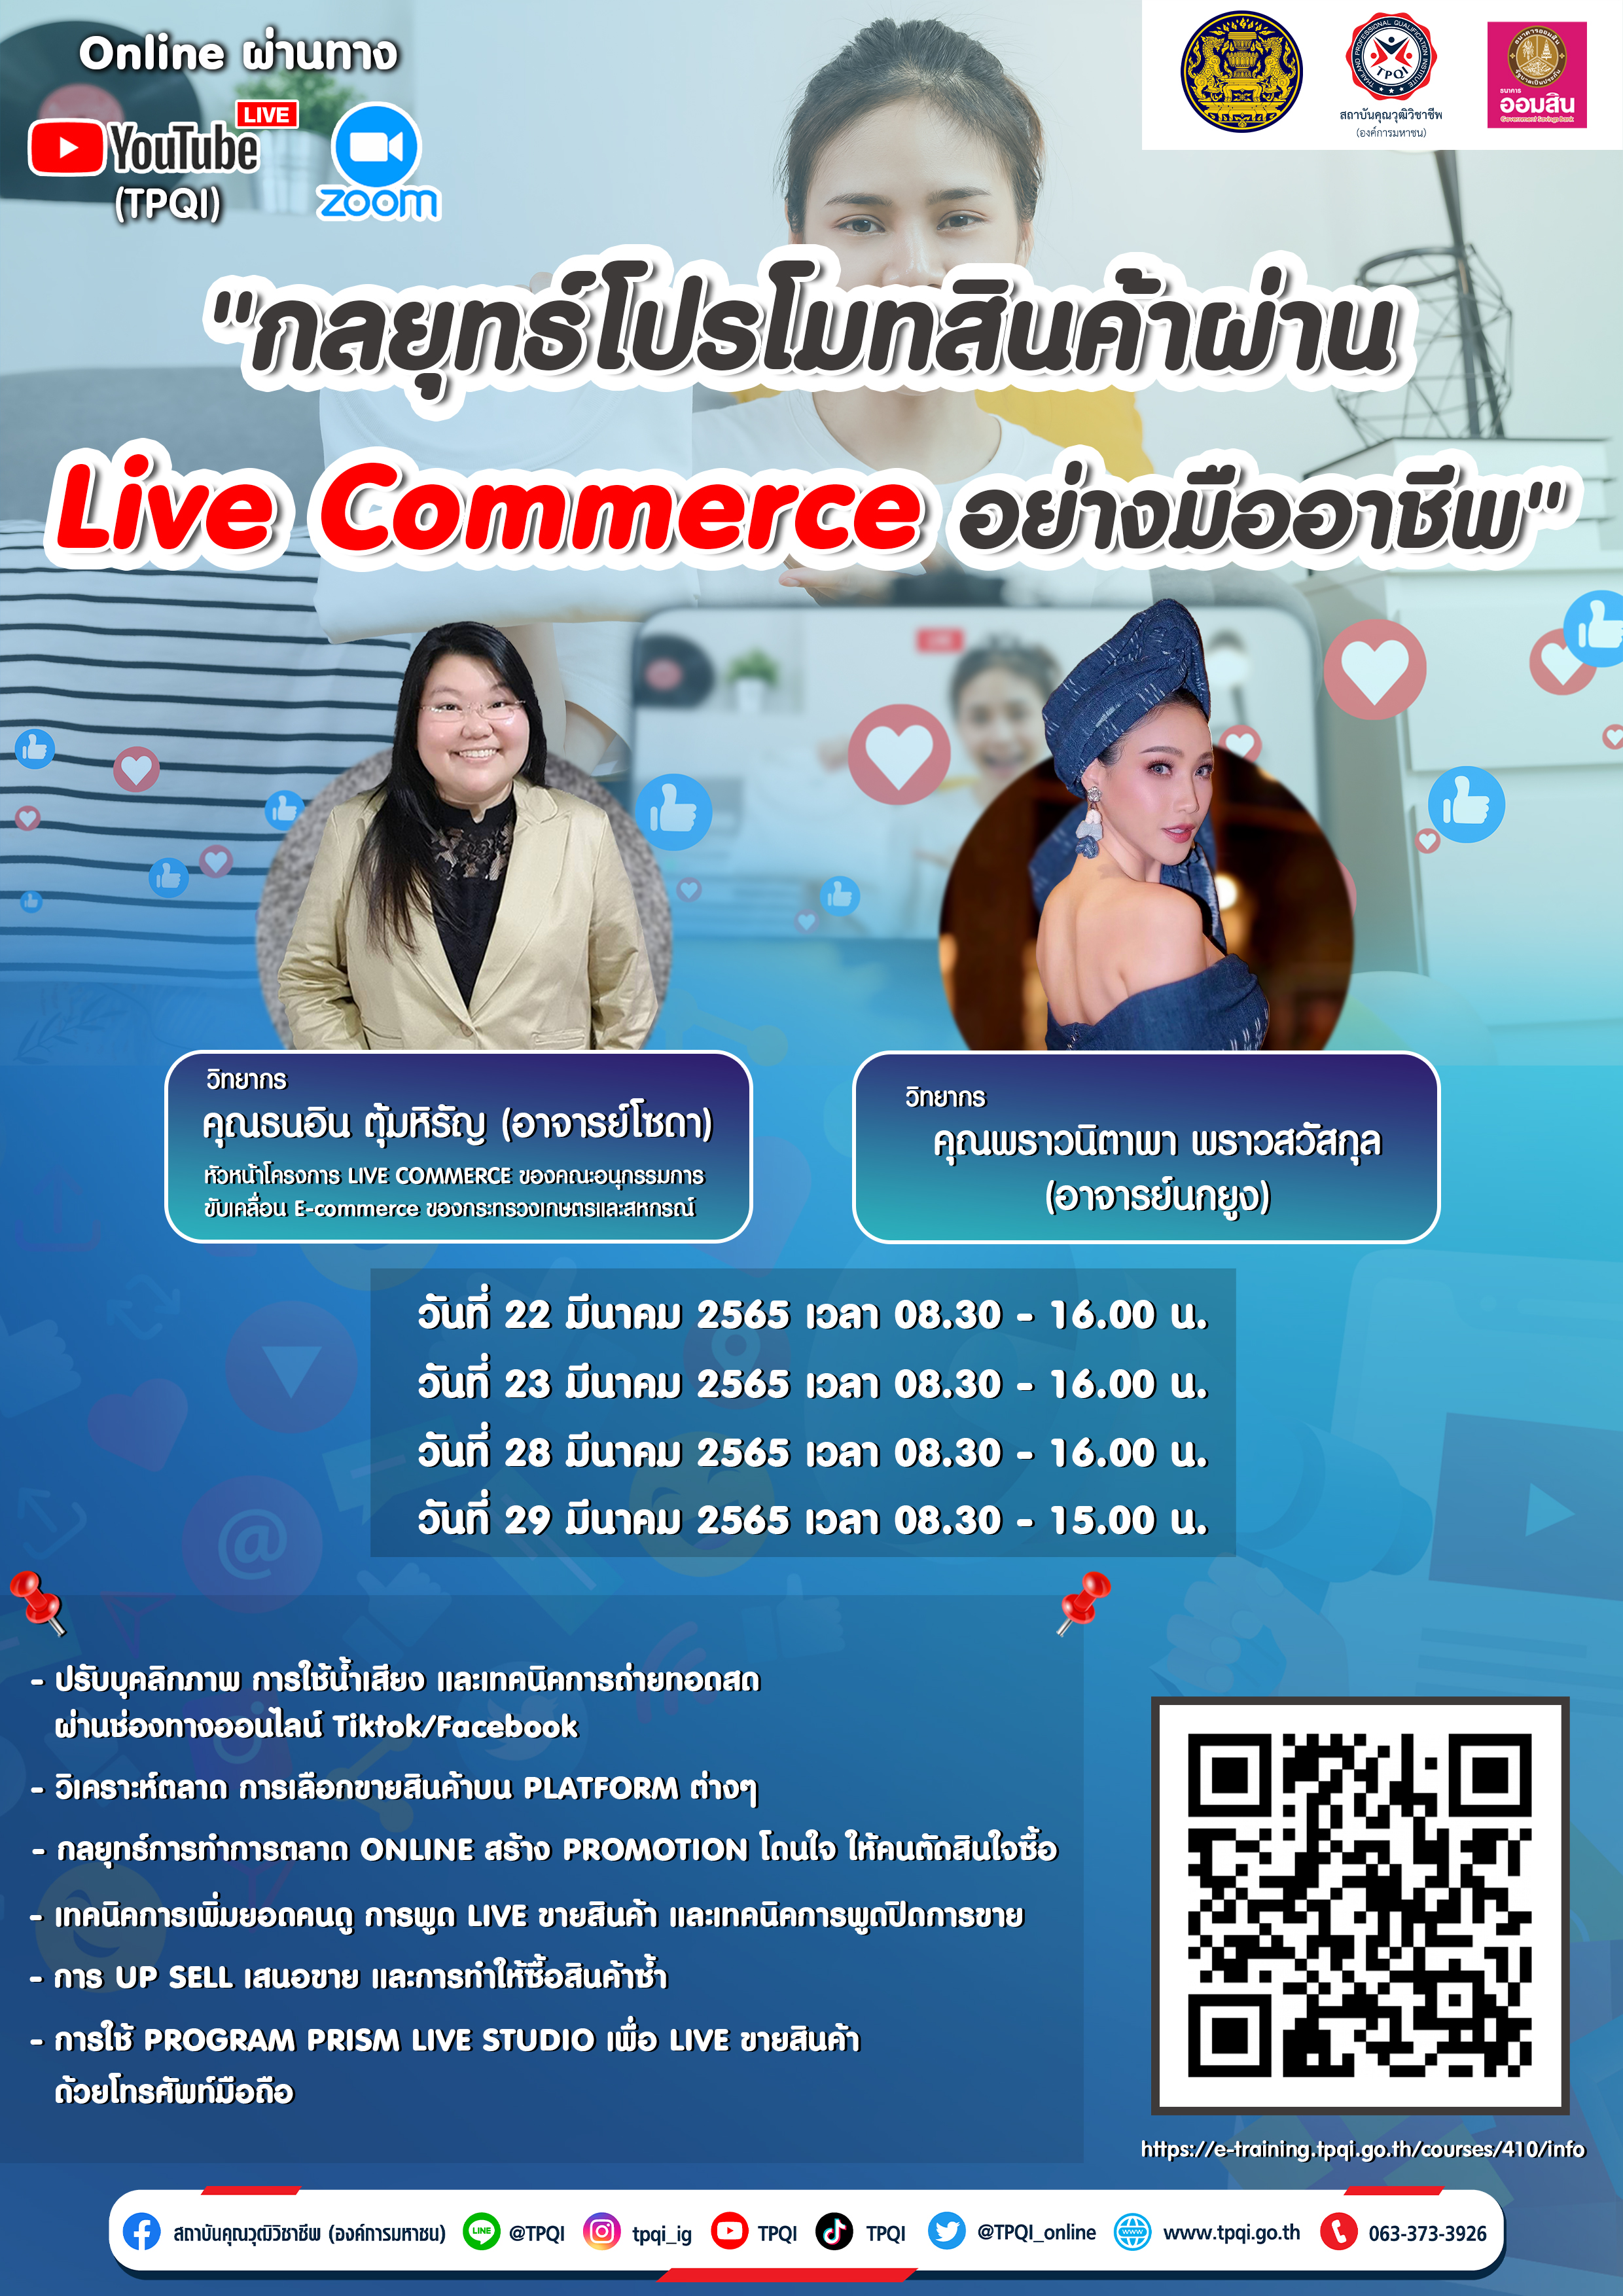 หลักสูตร กลยุทธ์โปรโมทสินค้าผ่าน Live Commerce อย่างมืออาชีพ